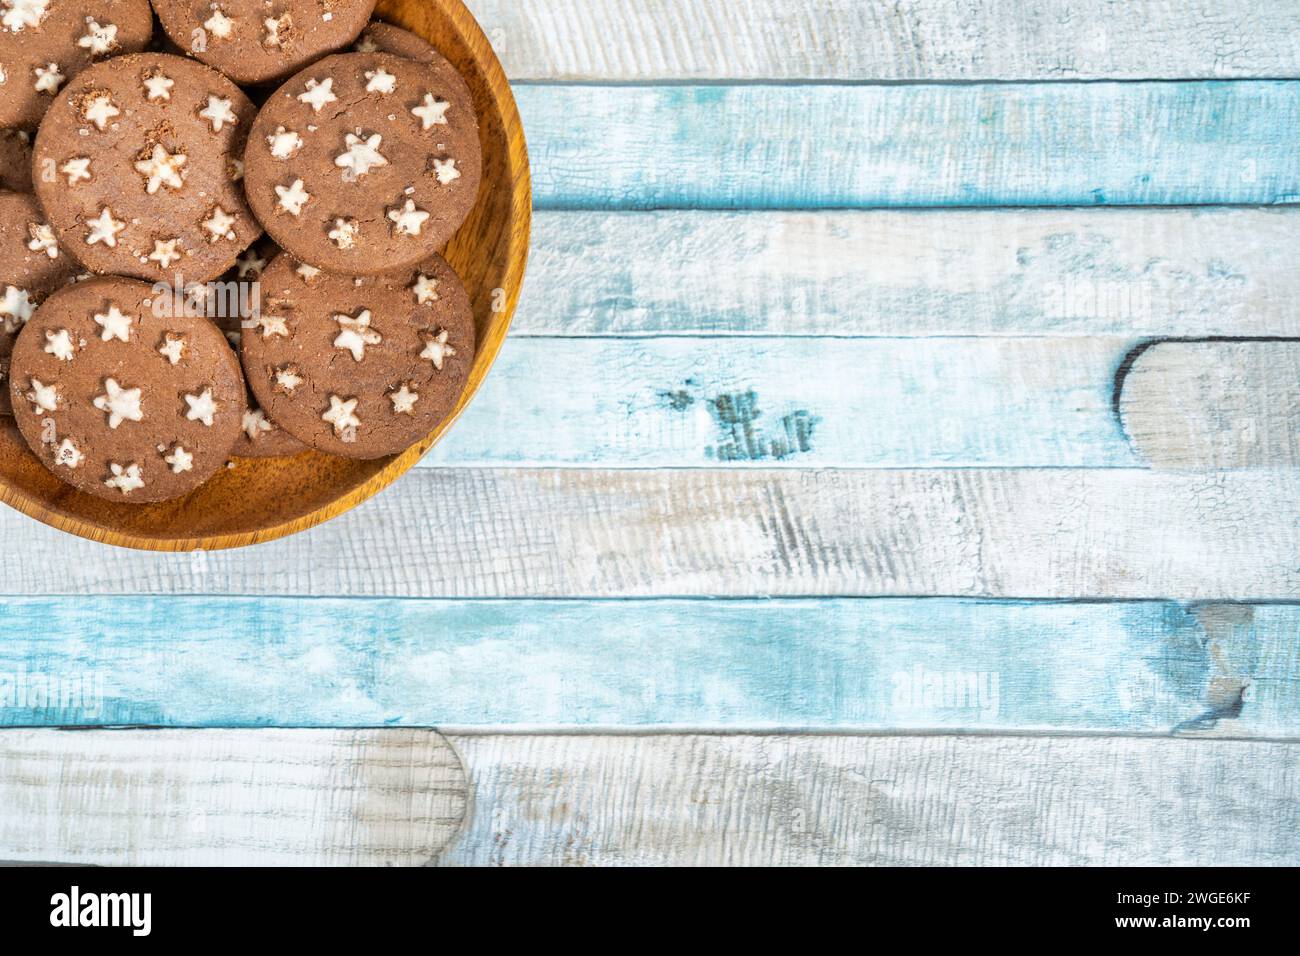 Délicieux biscuits au cacao sucré biscuits sur une assiette en bois. Prise de vue aérienne. Fond bleu coloré. Banque D'Images